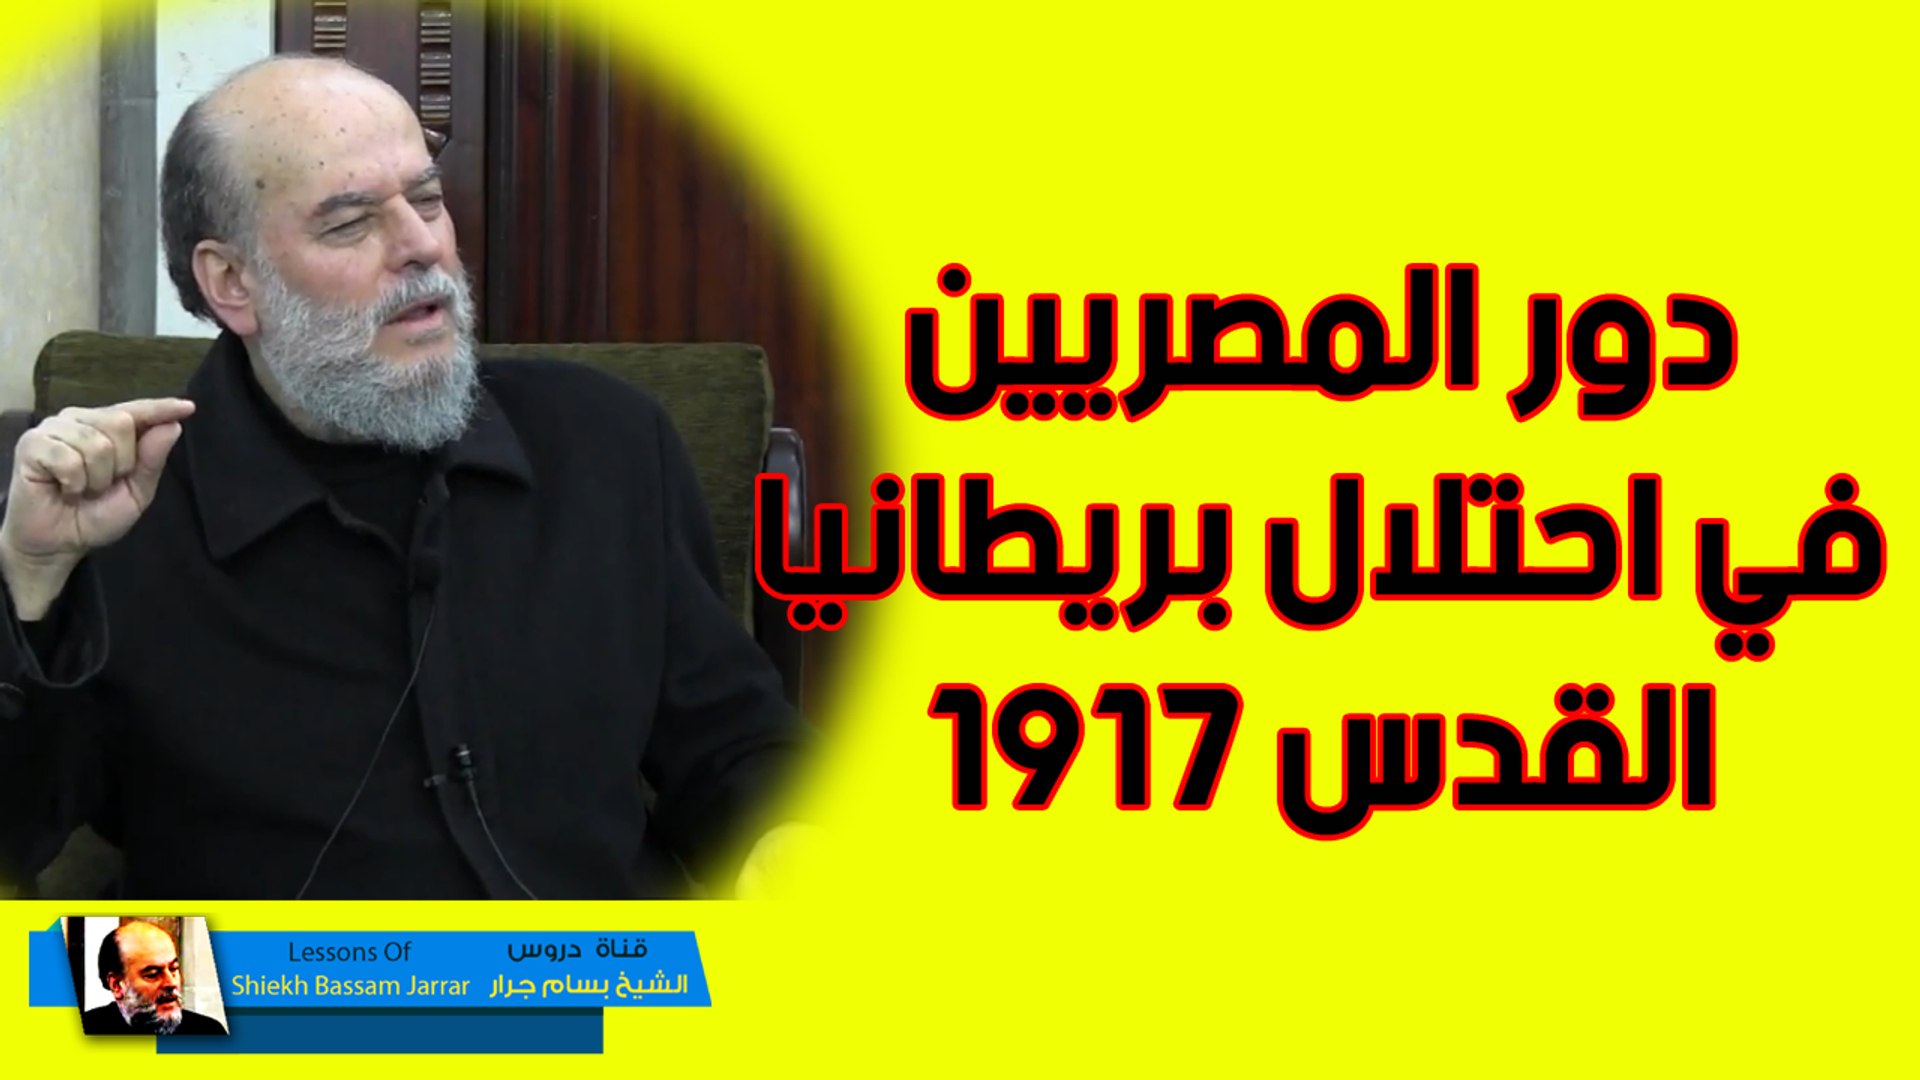 اخطر تصريح من الشيخ بسام جرار دور المصريين فى احتلال بريطانيا القدس 1917 م  - فيديو Dailymotion